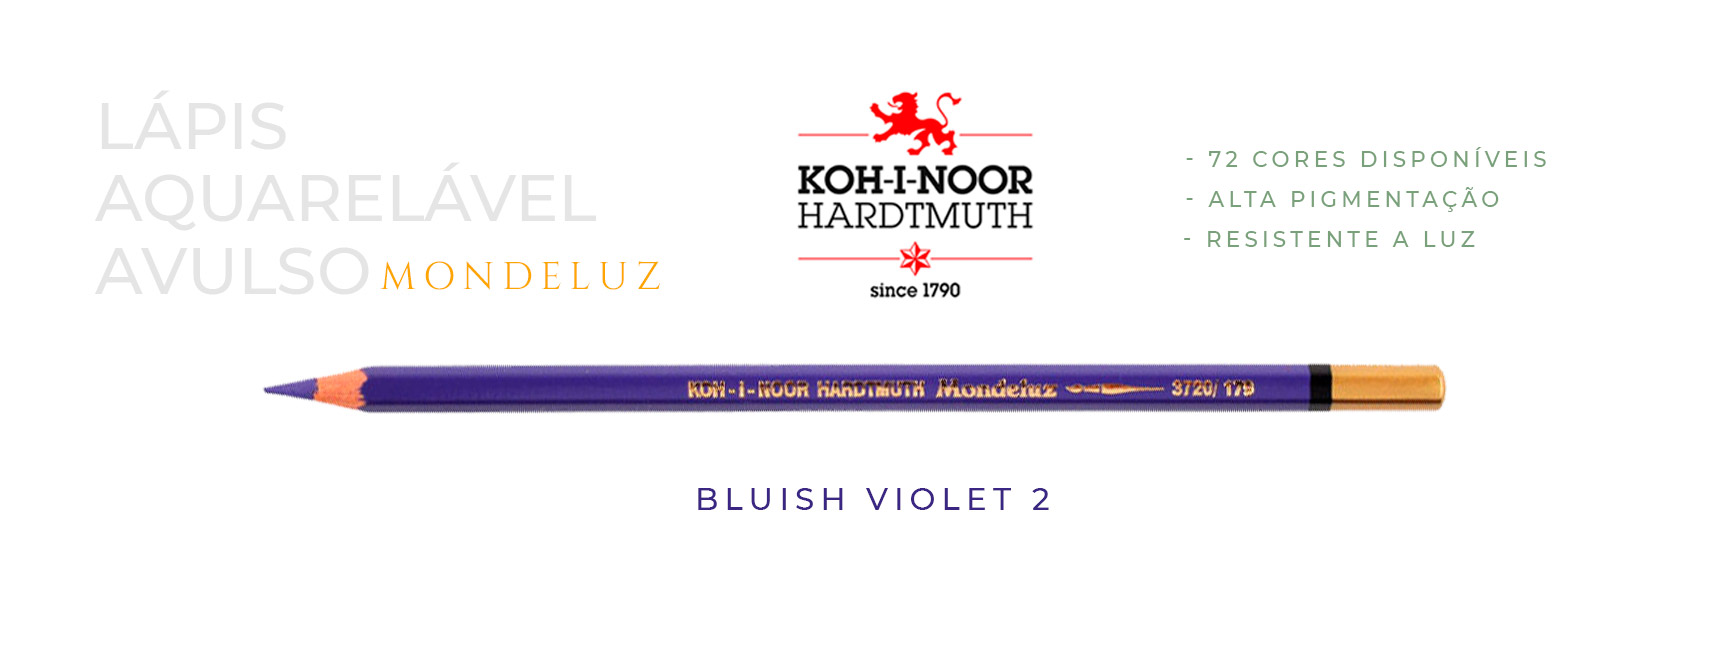 Lápis aquarelável avulso bluish violet 2 koh-i-noor